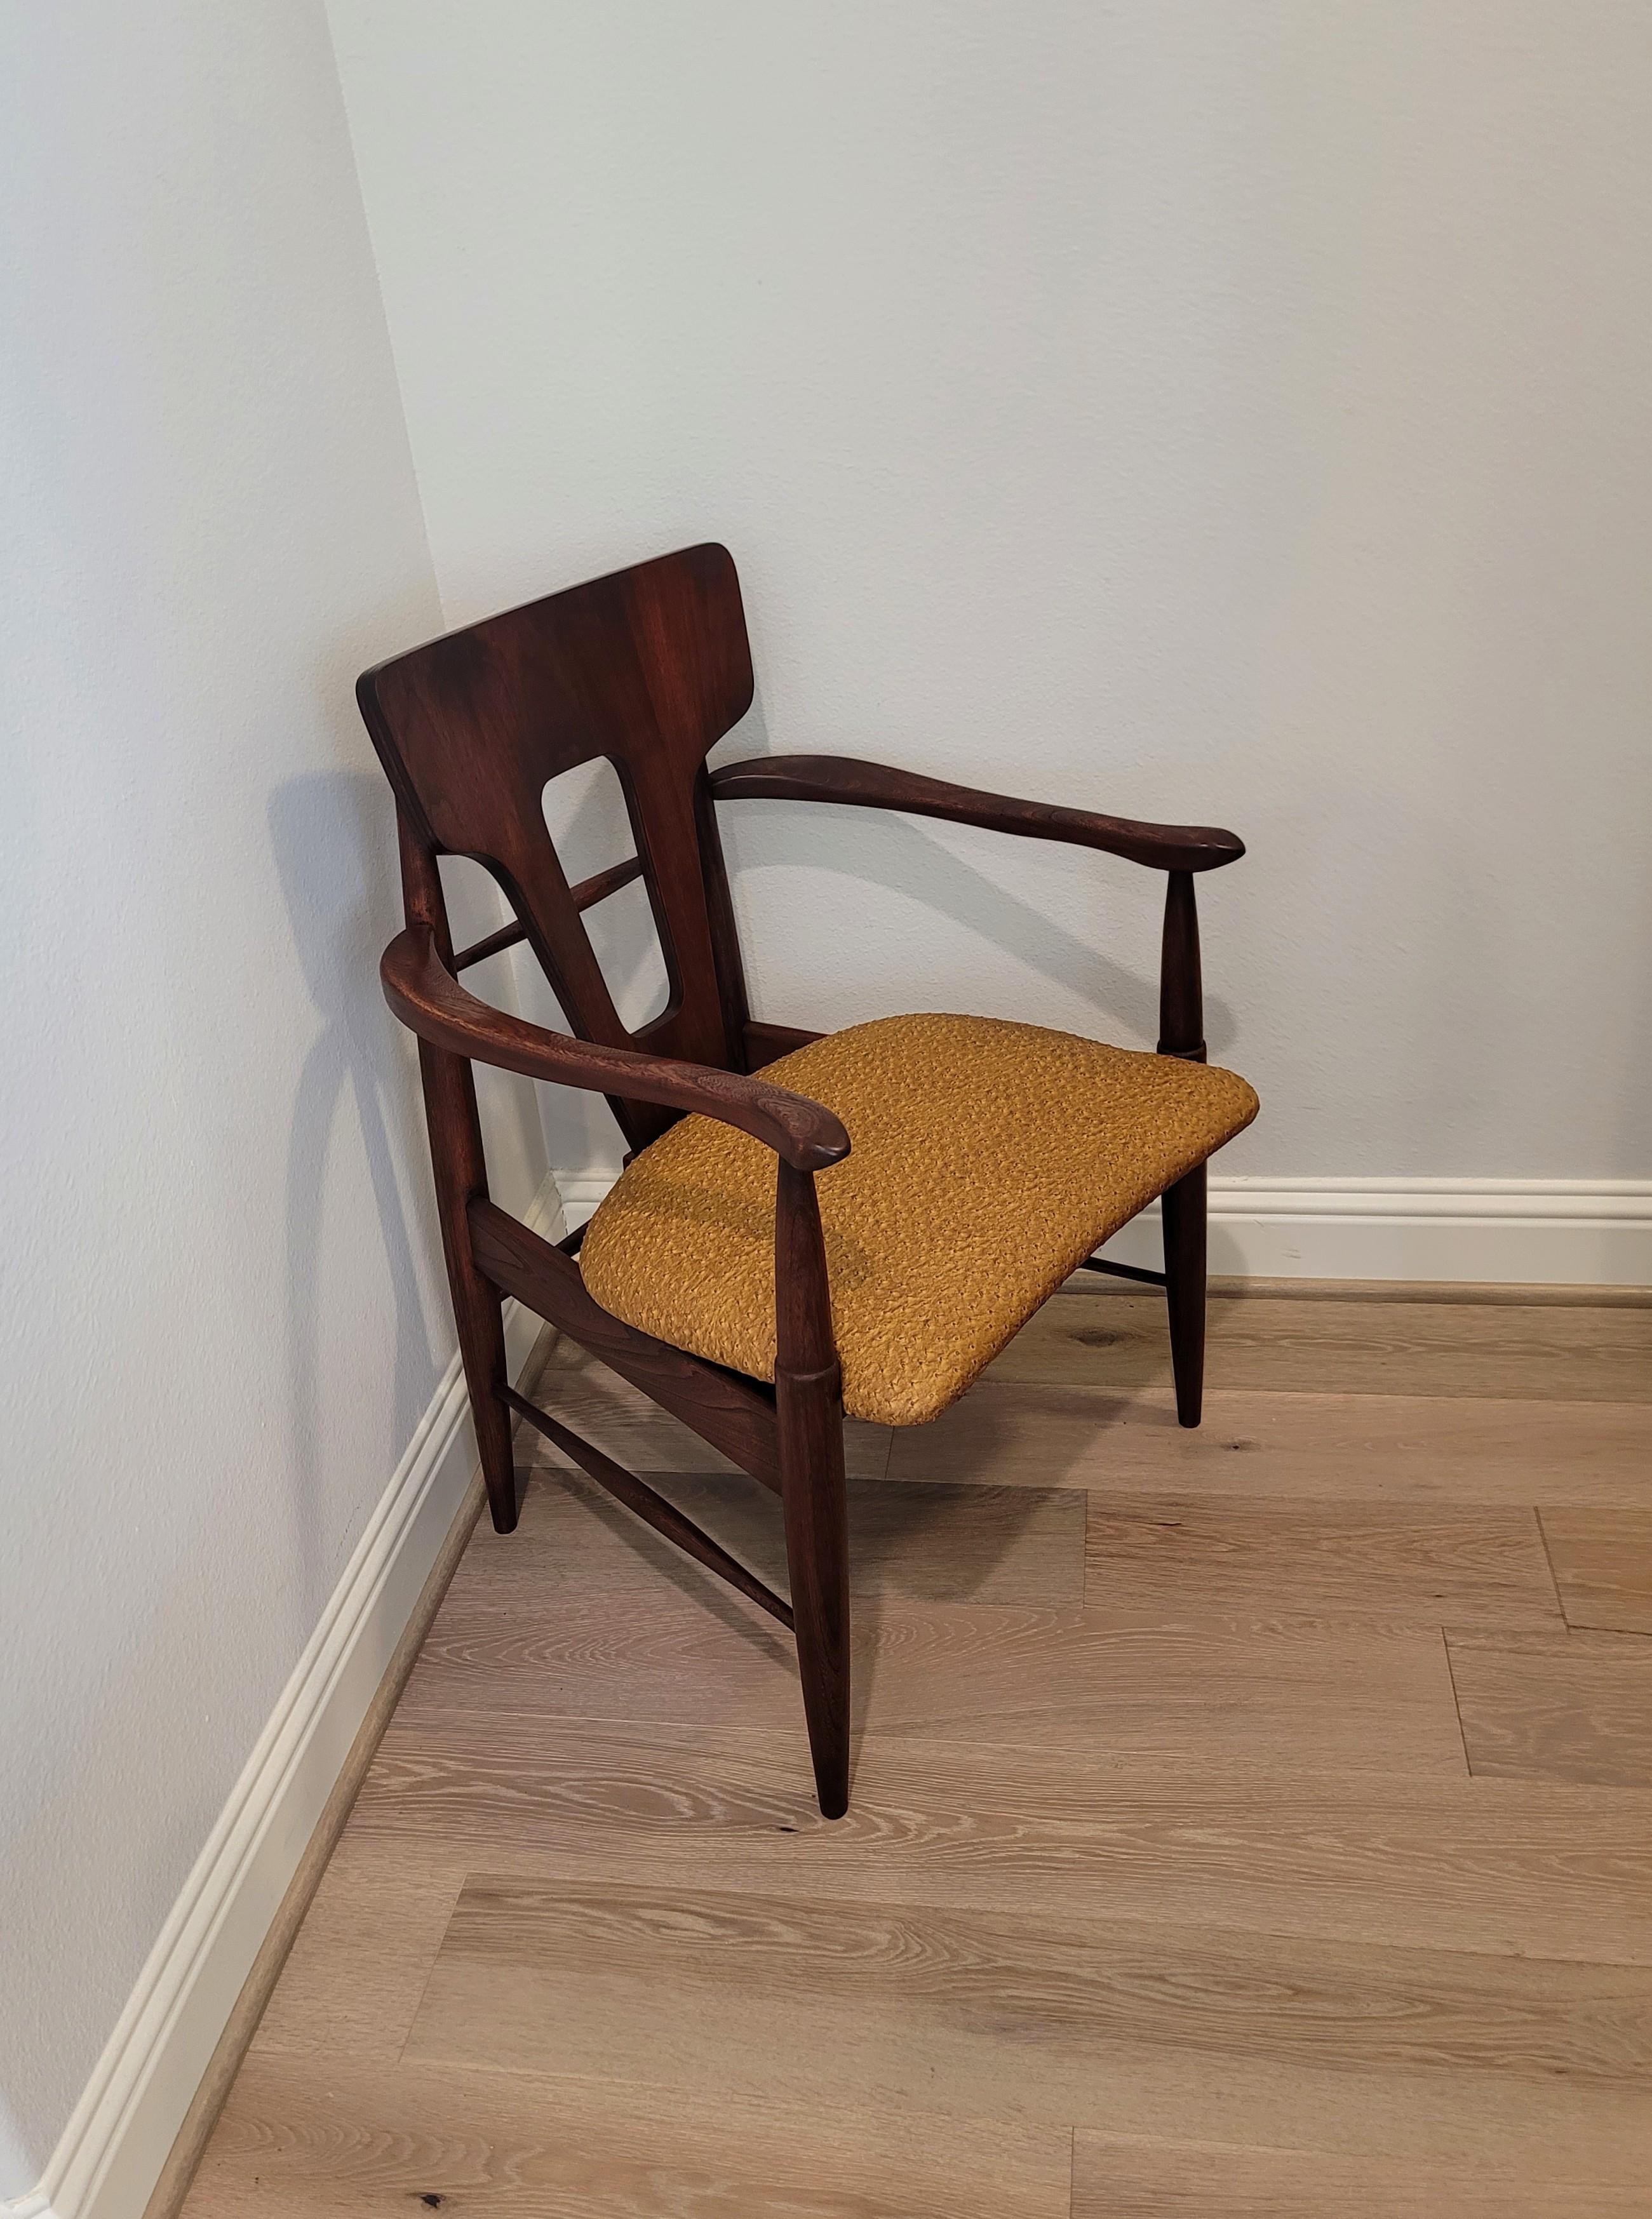 Ein fabelhafter skulpturaler Sessel aus der Jahrhundertmitte der 1960er Jahre aus dunklem Teakholz und hellbrauner Straußenpolsterung. 

Er ist etwas breiter und massiver als die typischen Scandinavian Modern Stühle und hat eine unverwechselbare